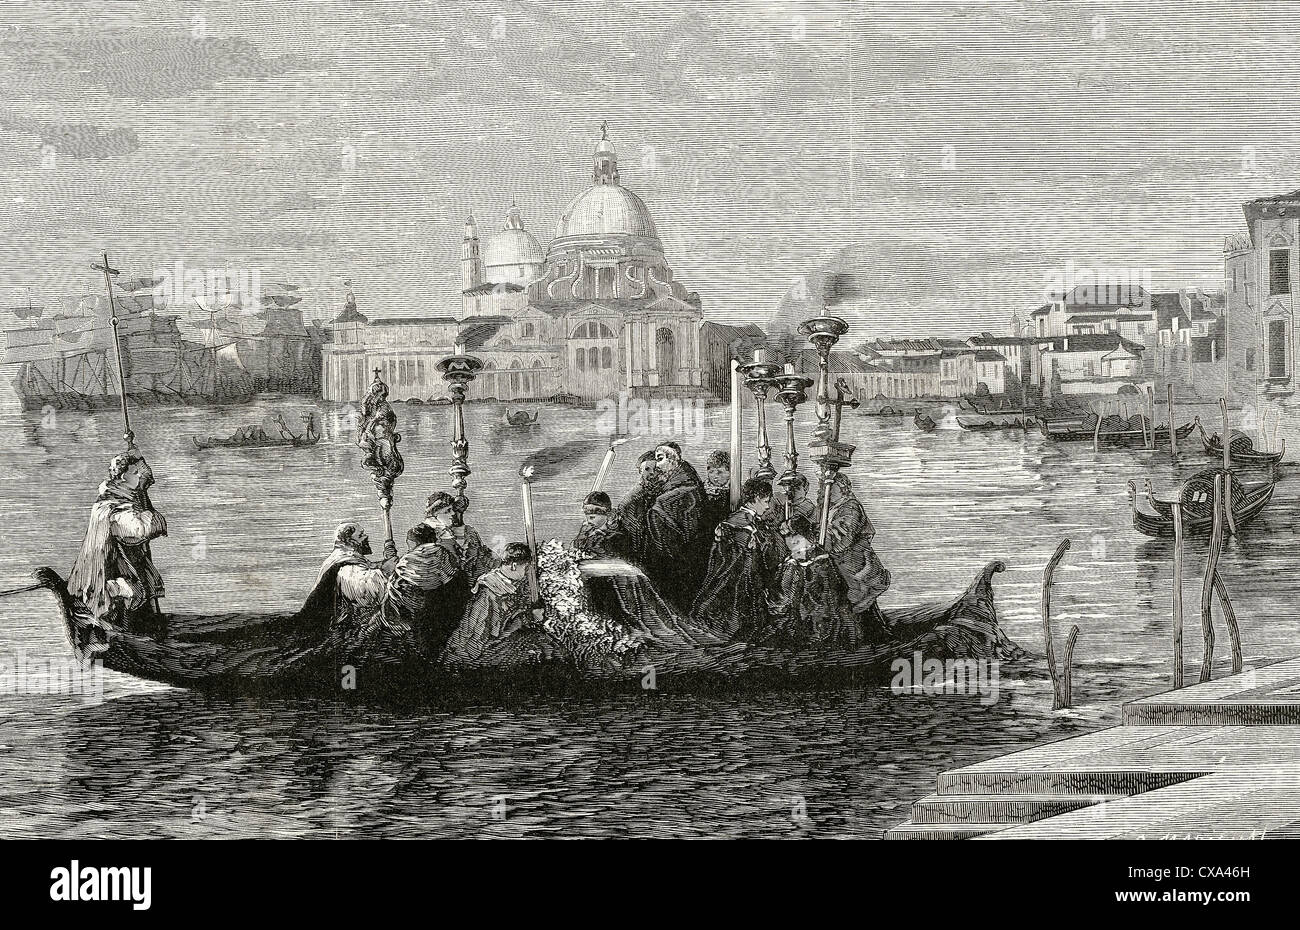 L'Italia. Venezia. Xix secolo. Il corteo funebre. Incisione di Marichal in "l'immagine", 1880. Foto Stock